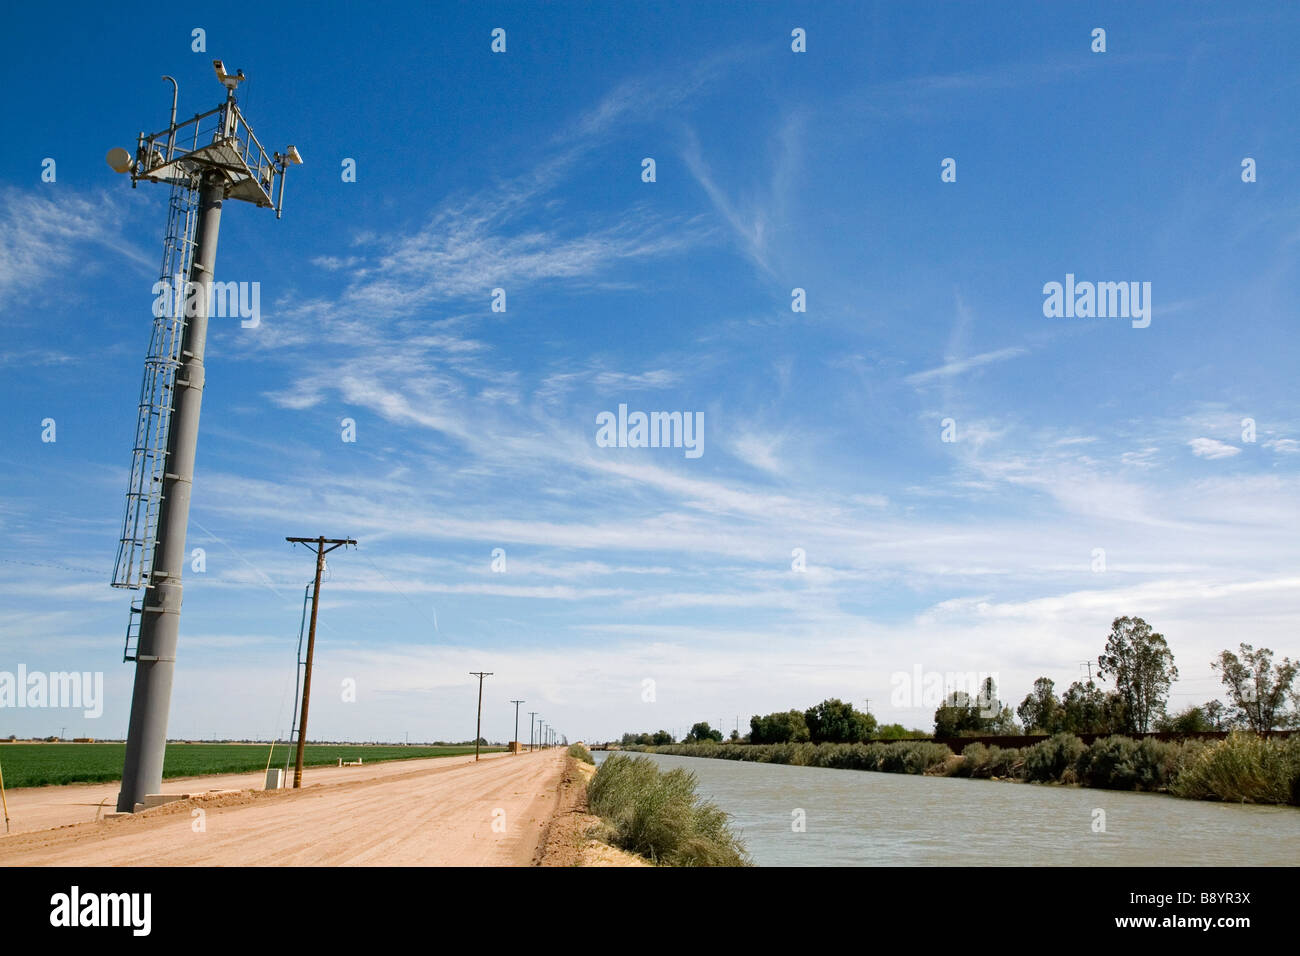 Video-Monitore für Smart Border abh an der U-S-mexikanischen Grenze entlang des All-American-Kanals in der Nähe von Calexico California Stockfoto